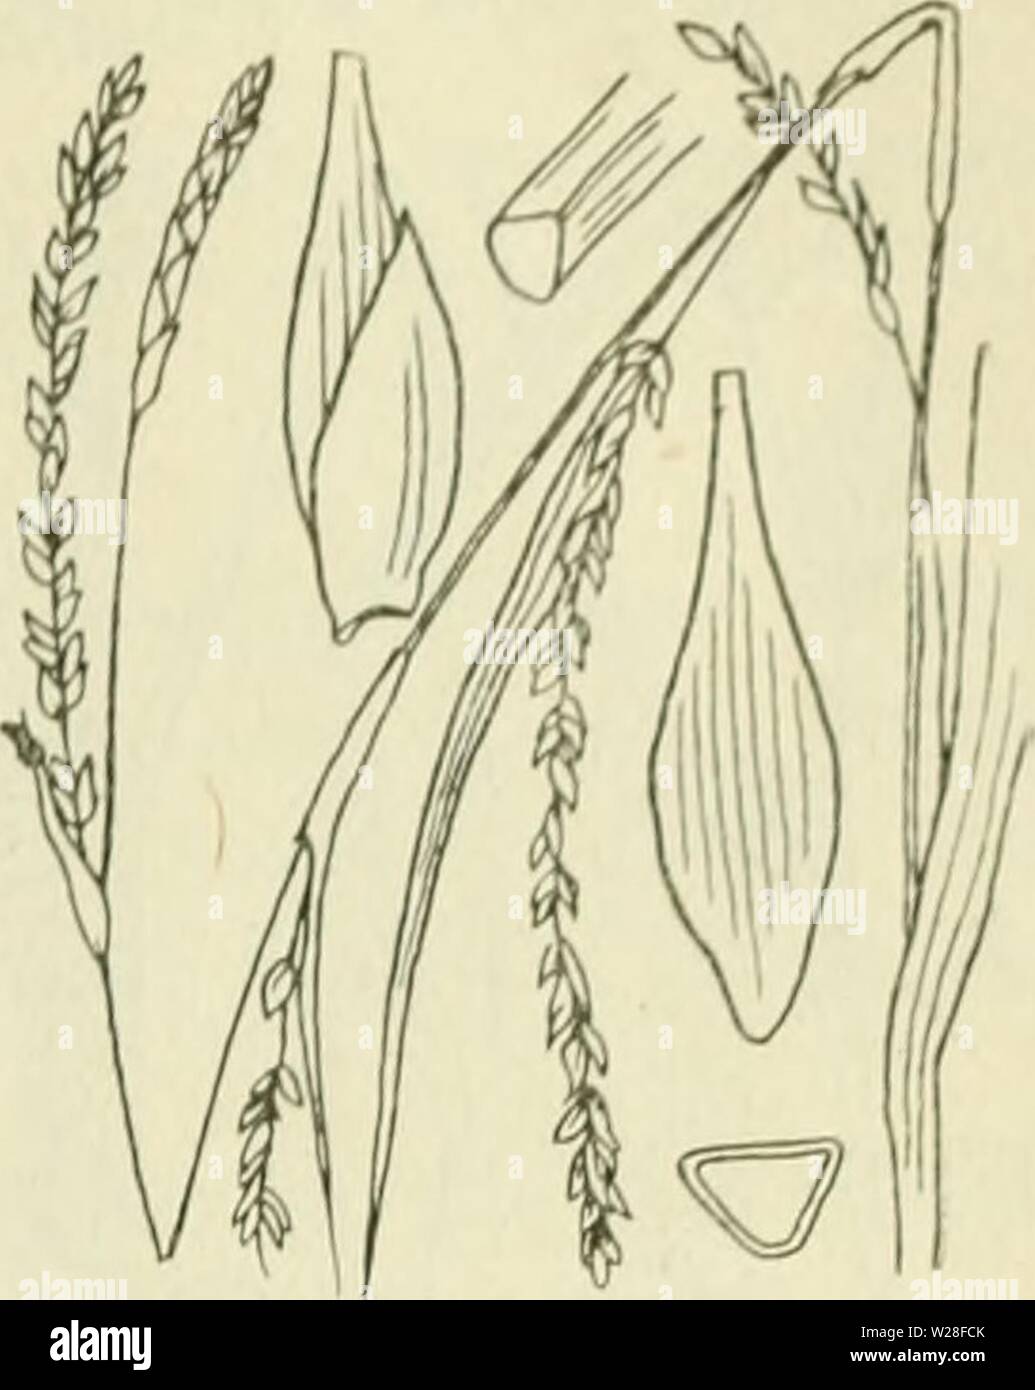 Image d'archive à partir de la page 444 de De flora van Nederland (1909-11). De flora van Nederland defloravannederl01heuk Année : 1909-11. FAM1L11- : 17. Â CYPERACEAE. 403 Carex strigosa Fig. 326. zaani ina même iinitjes ile de la SLA. Deze (fiÂ". 32(5) le drickantit Iancctvormitj,'-ellipsoÃ¯discli ;-, environ 3 mM, lanj', veelnervi noiei.u,(Jeliji&Lt ; dans den ziir iiei&lt;notten snavel versmald. Het mannelijke aartje los- bloemij ; est, petite, verlcn.ud, tof 5 cM, lanf', de l'iets bruinachtig kafjes zijn niet'stevijje middenstreep, groene. De vruchten zijn nog niet zeer klein, 2 mM lang, eirond driekanti,.u. Banque D'Images